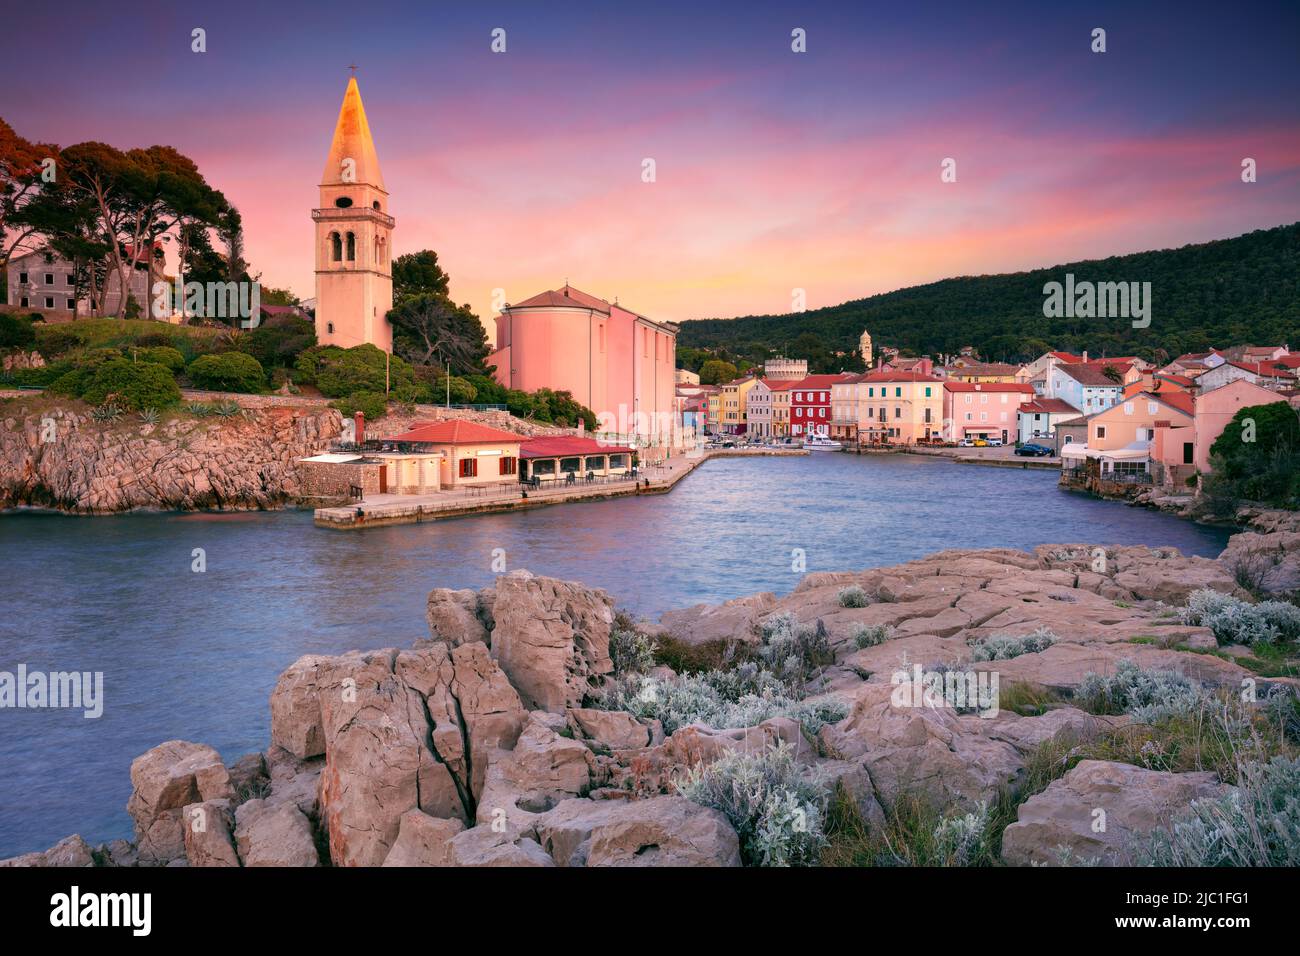 Mali Losinj, Insel Cres, Kroatien. Stadtbild des ikonischen Dorfes Mali Losinj, Kroatien auf der Insel Cres bei Sonnenuntergang. Stockfoto